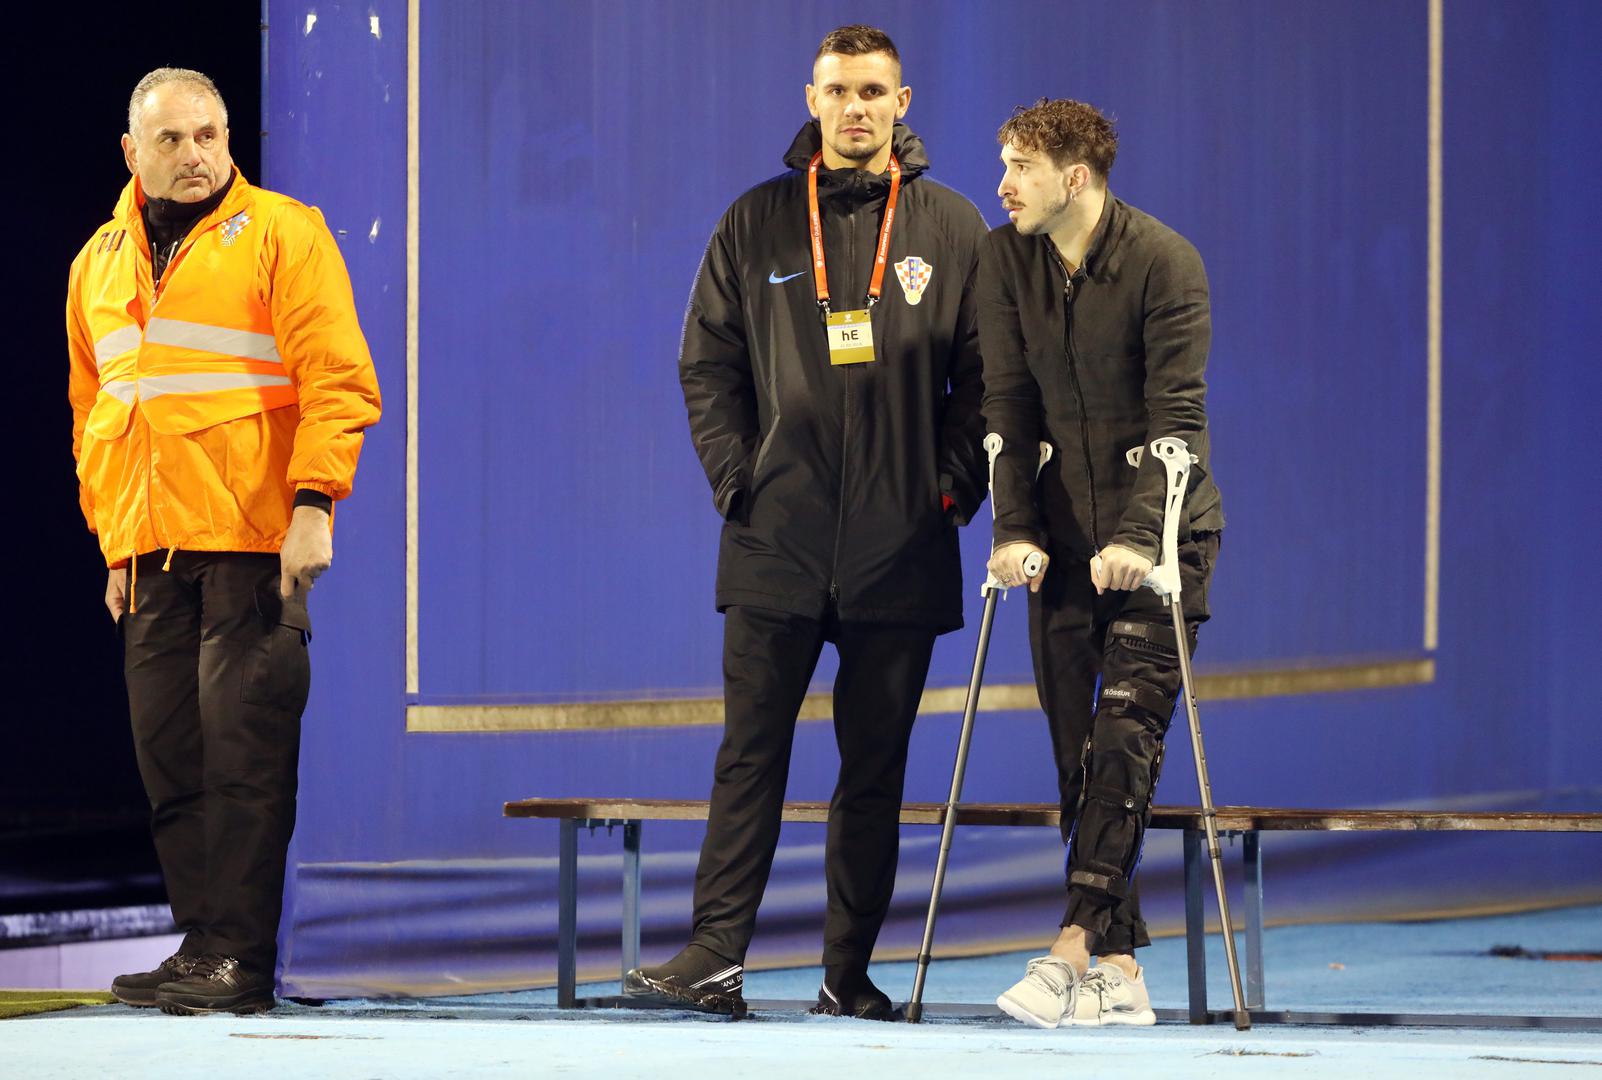 Na Maksimiru je i predsjednica Kolinda Grabar-Kitarović koja je stigla u dresu reprezentacije, a stigao je i Šime Vrsaljko koji je ozlijeđen.